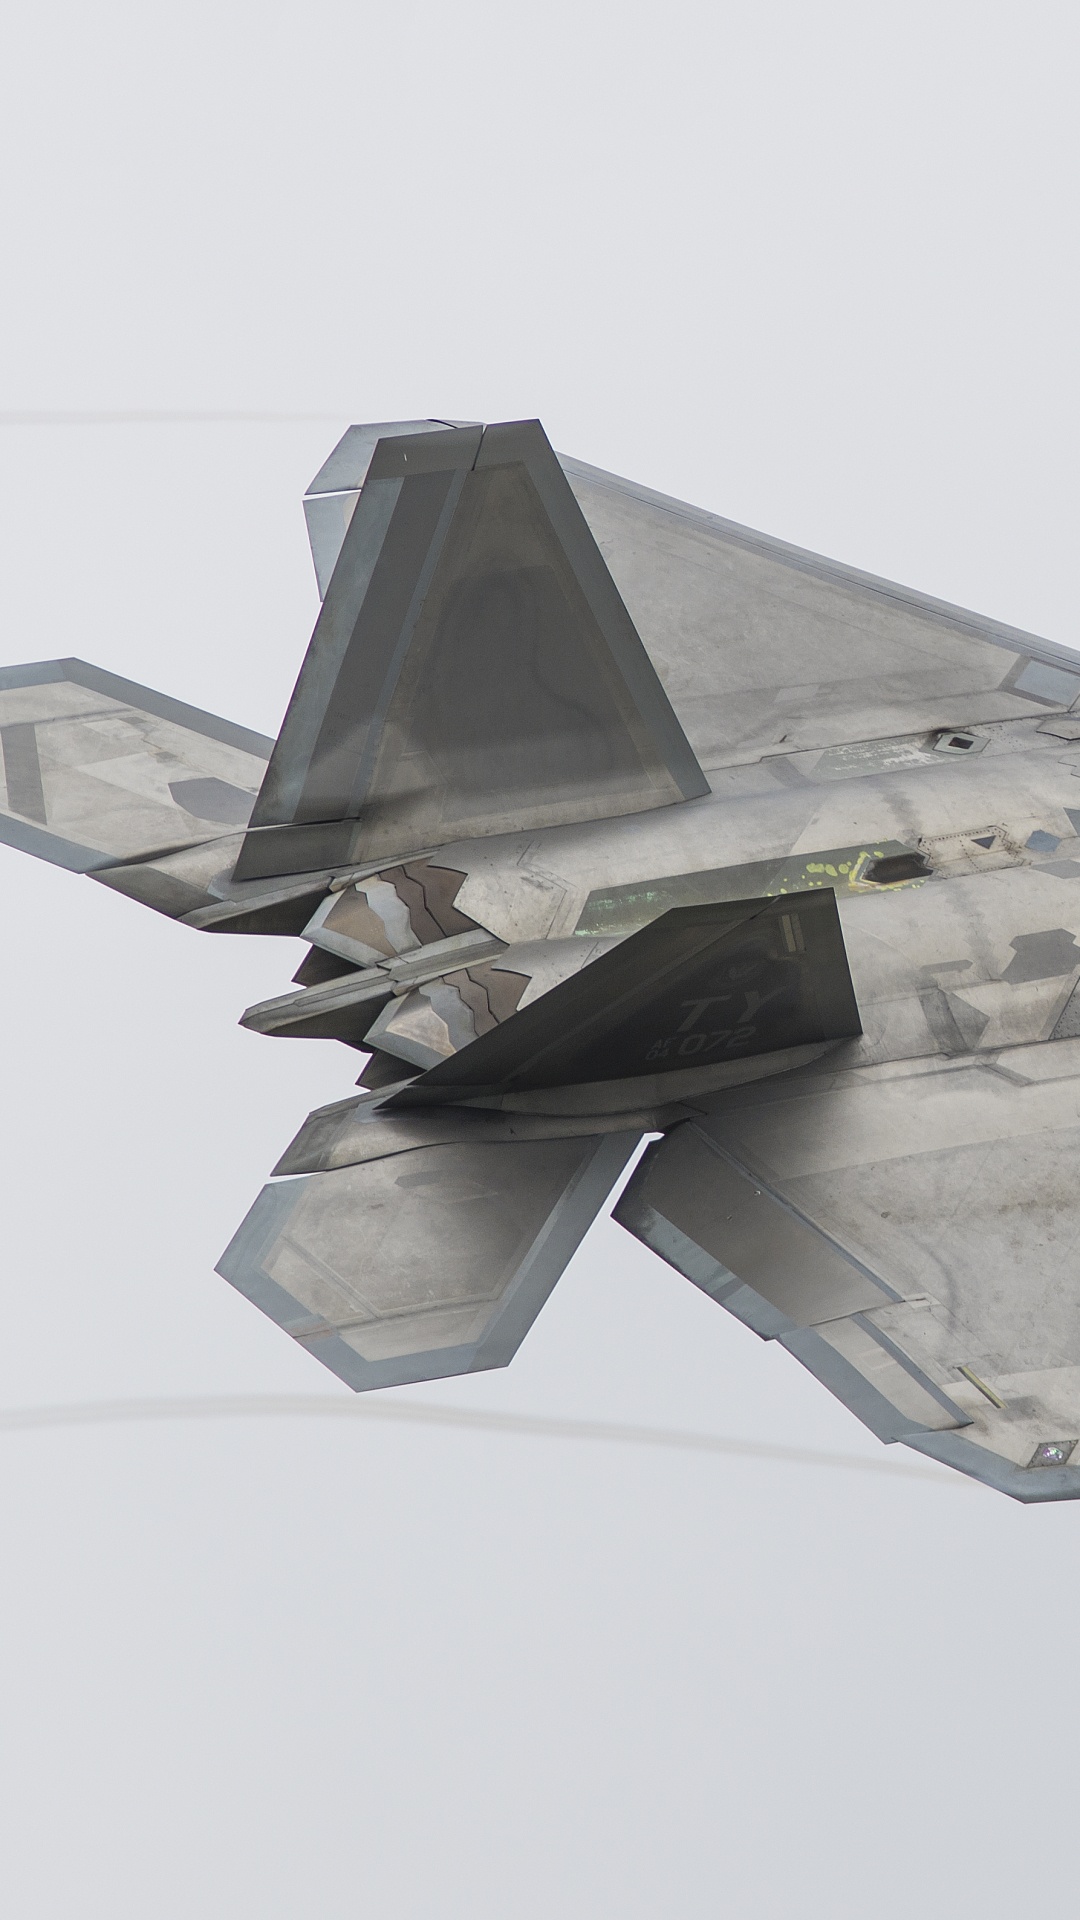 洛克希德*马丁公司, 军用飞机, 空军, 喷气式飞机, 洛克希德*马丁公司fb22 壁纸 1080x1920 允许